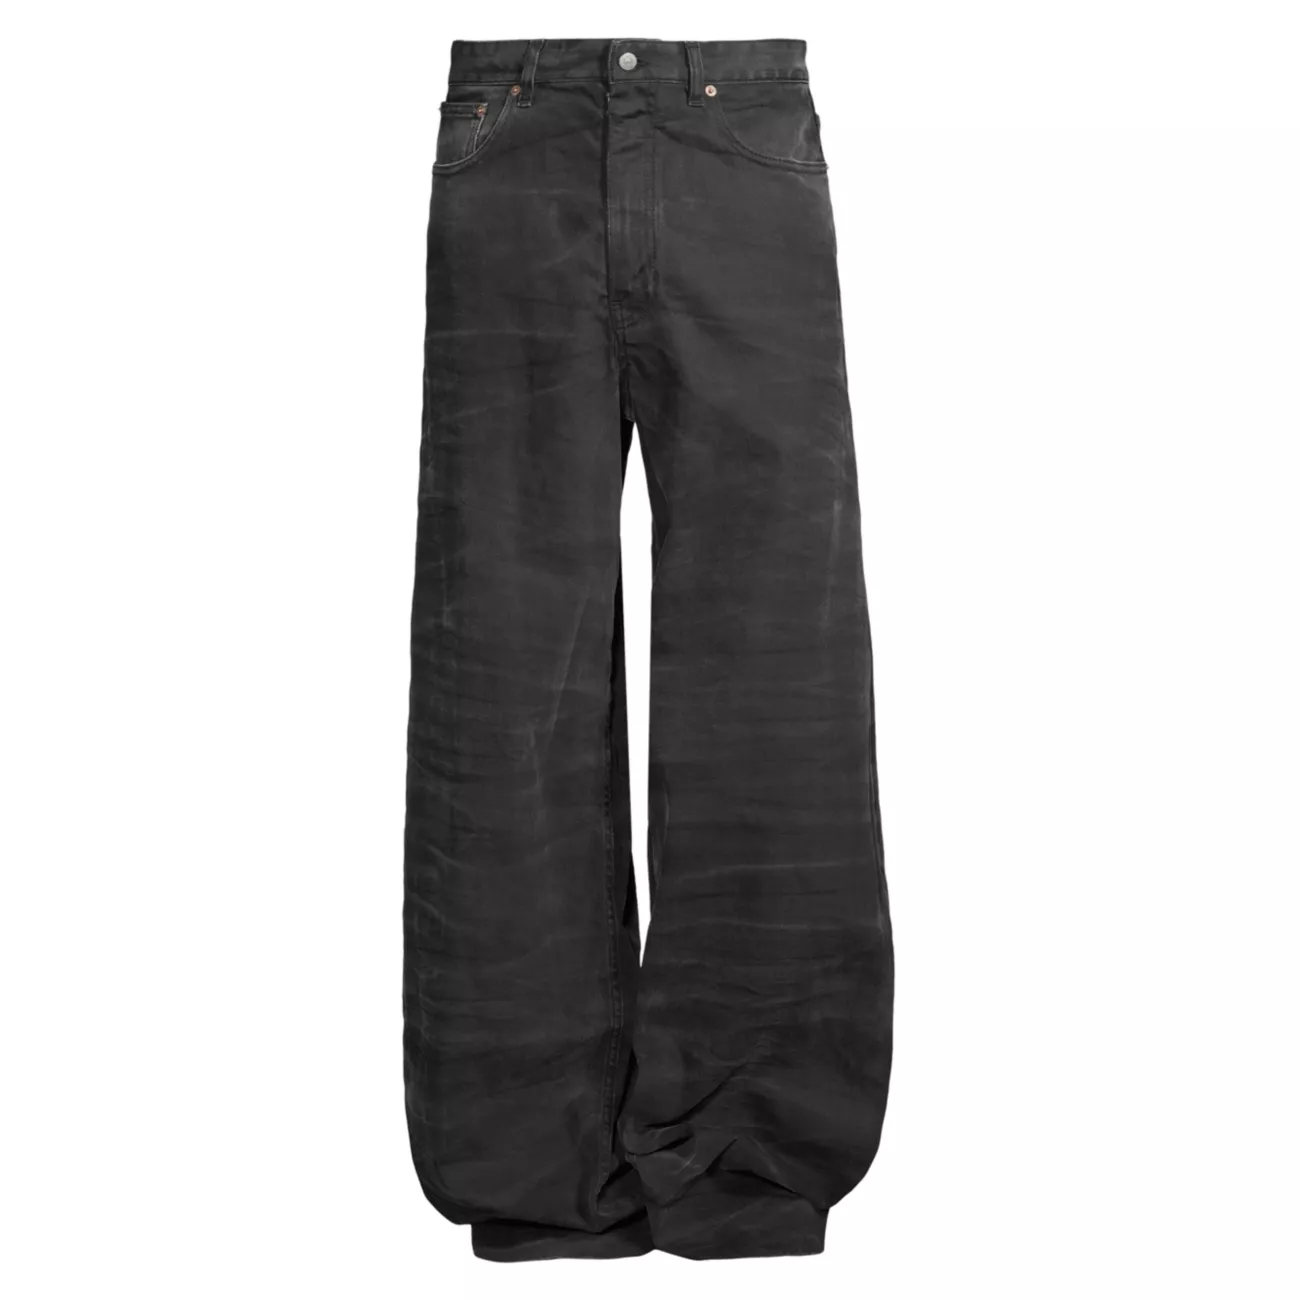 Расклешенные мешковатые джинсы MM6 Maison Margiela